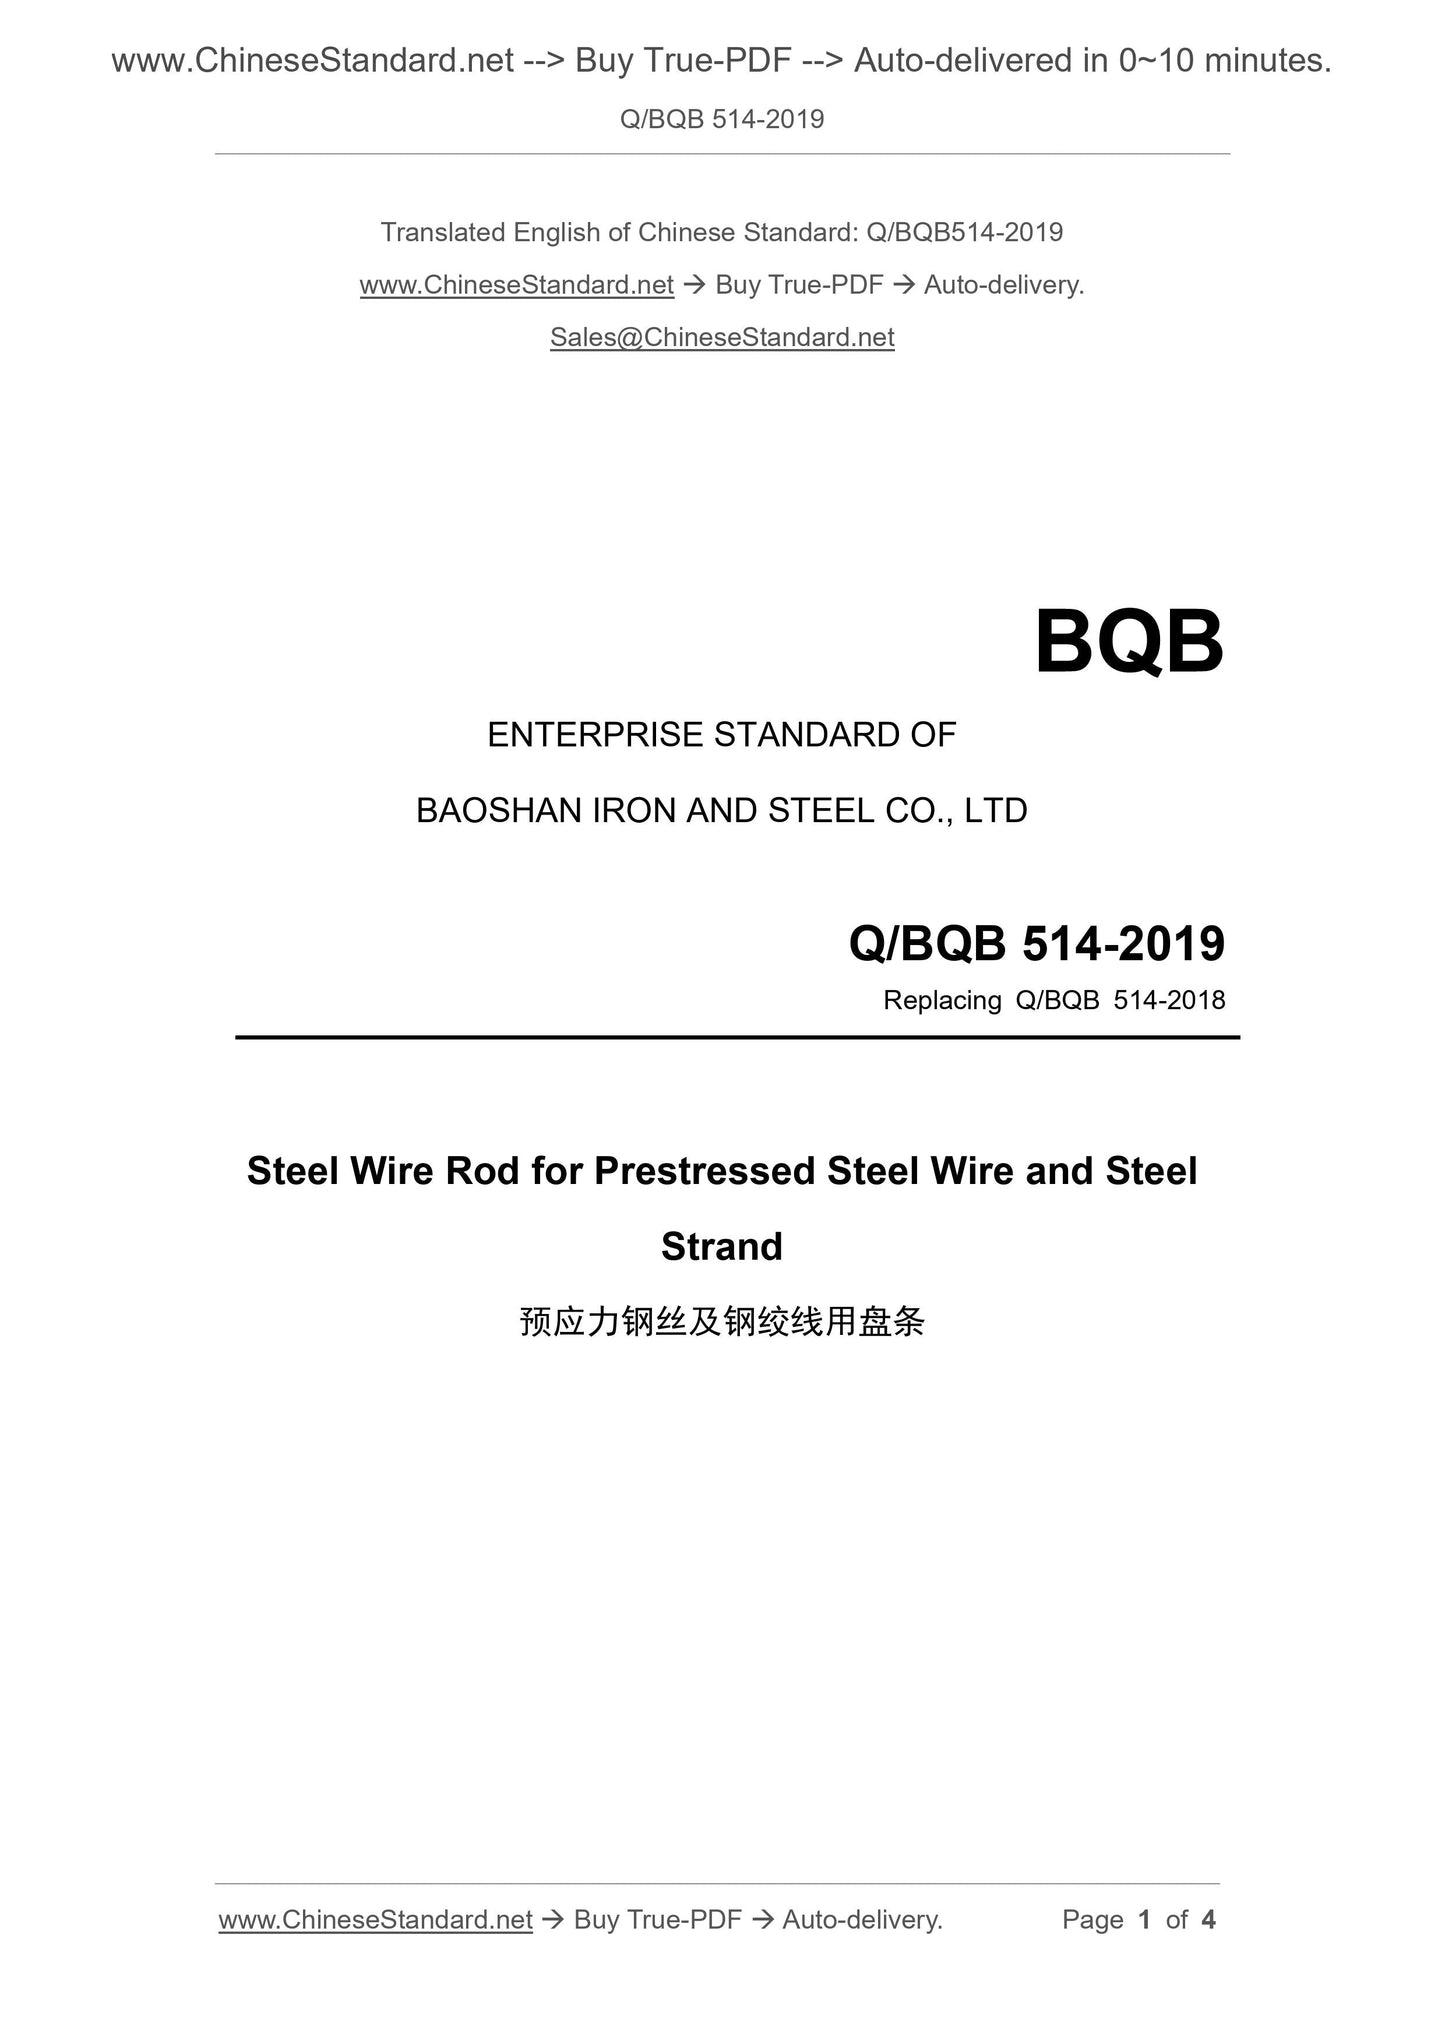 Q/BQB 514-2019 Page 1